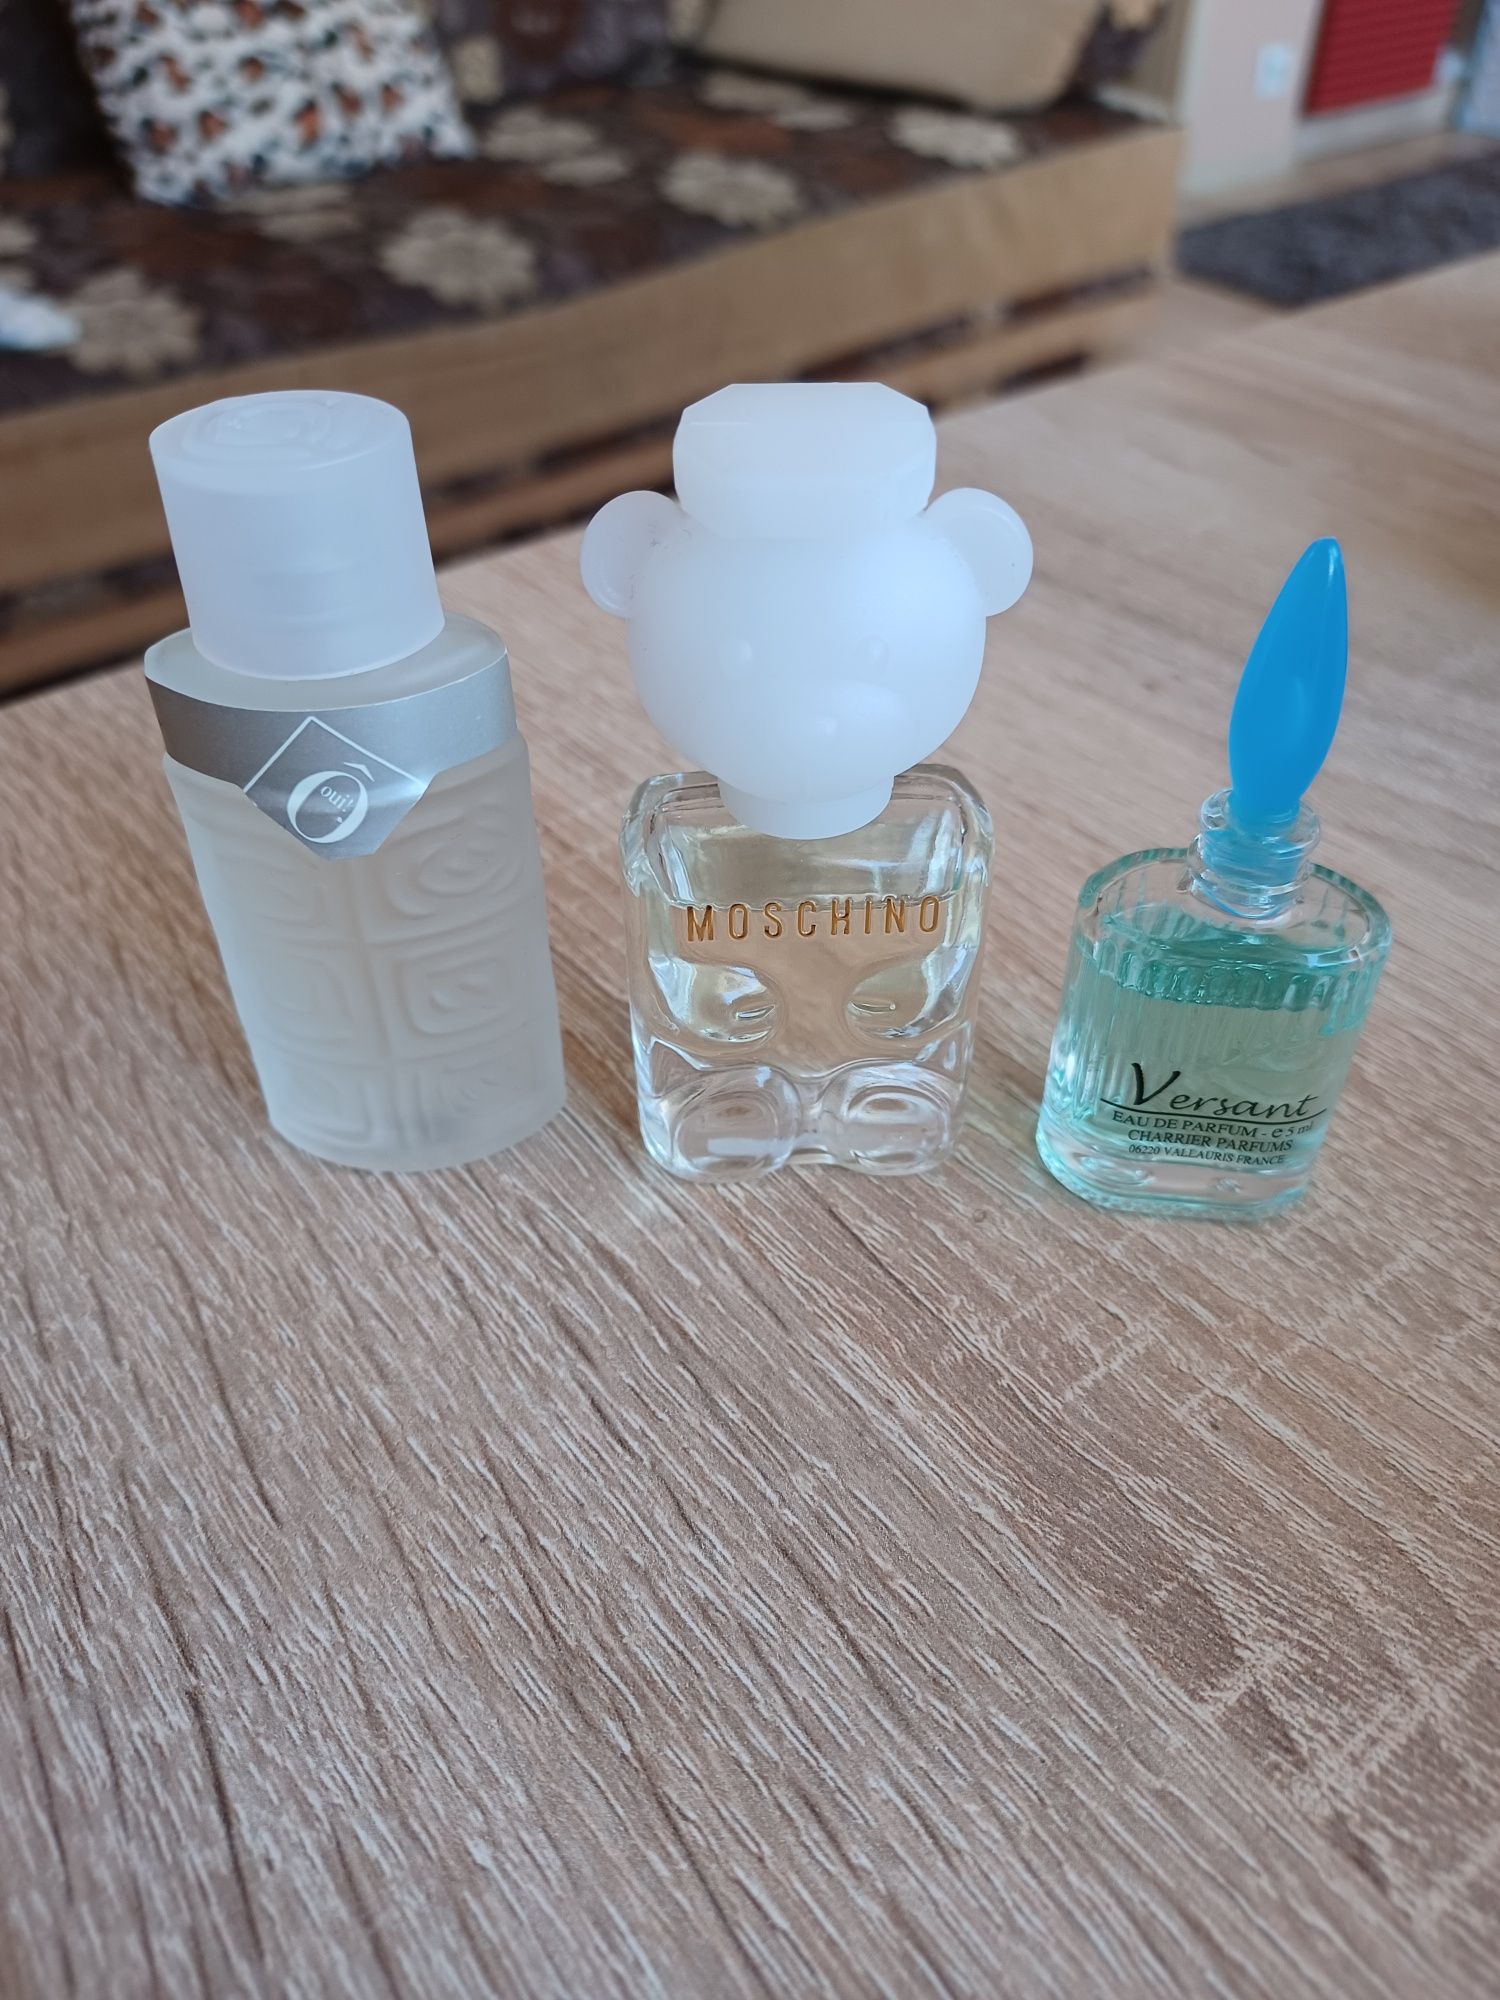 Miniaturki perfum 3sztuki orginalne.  .